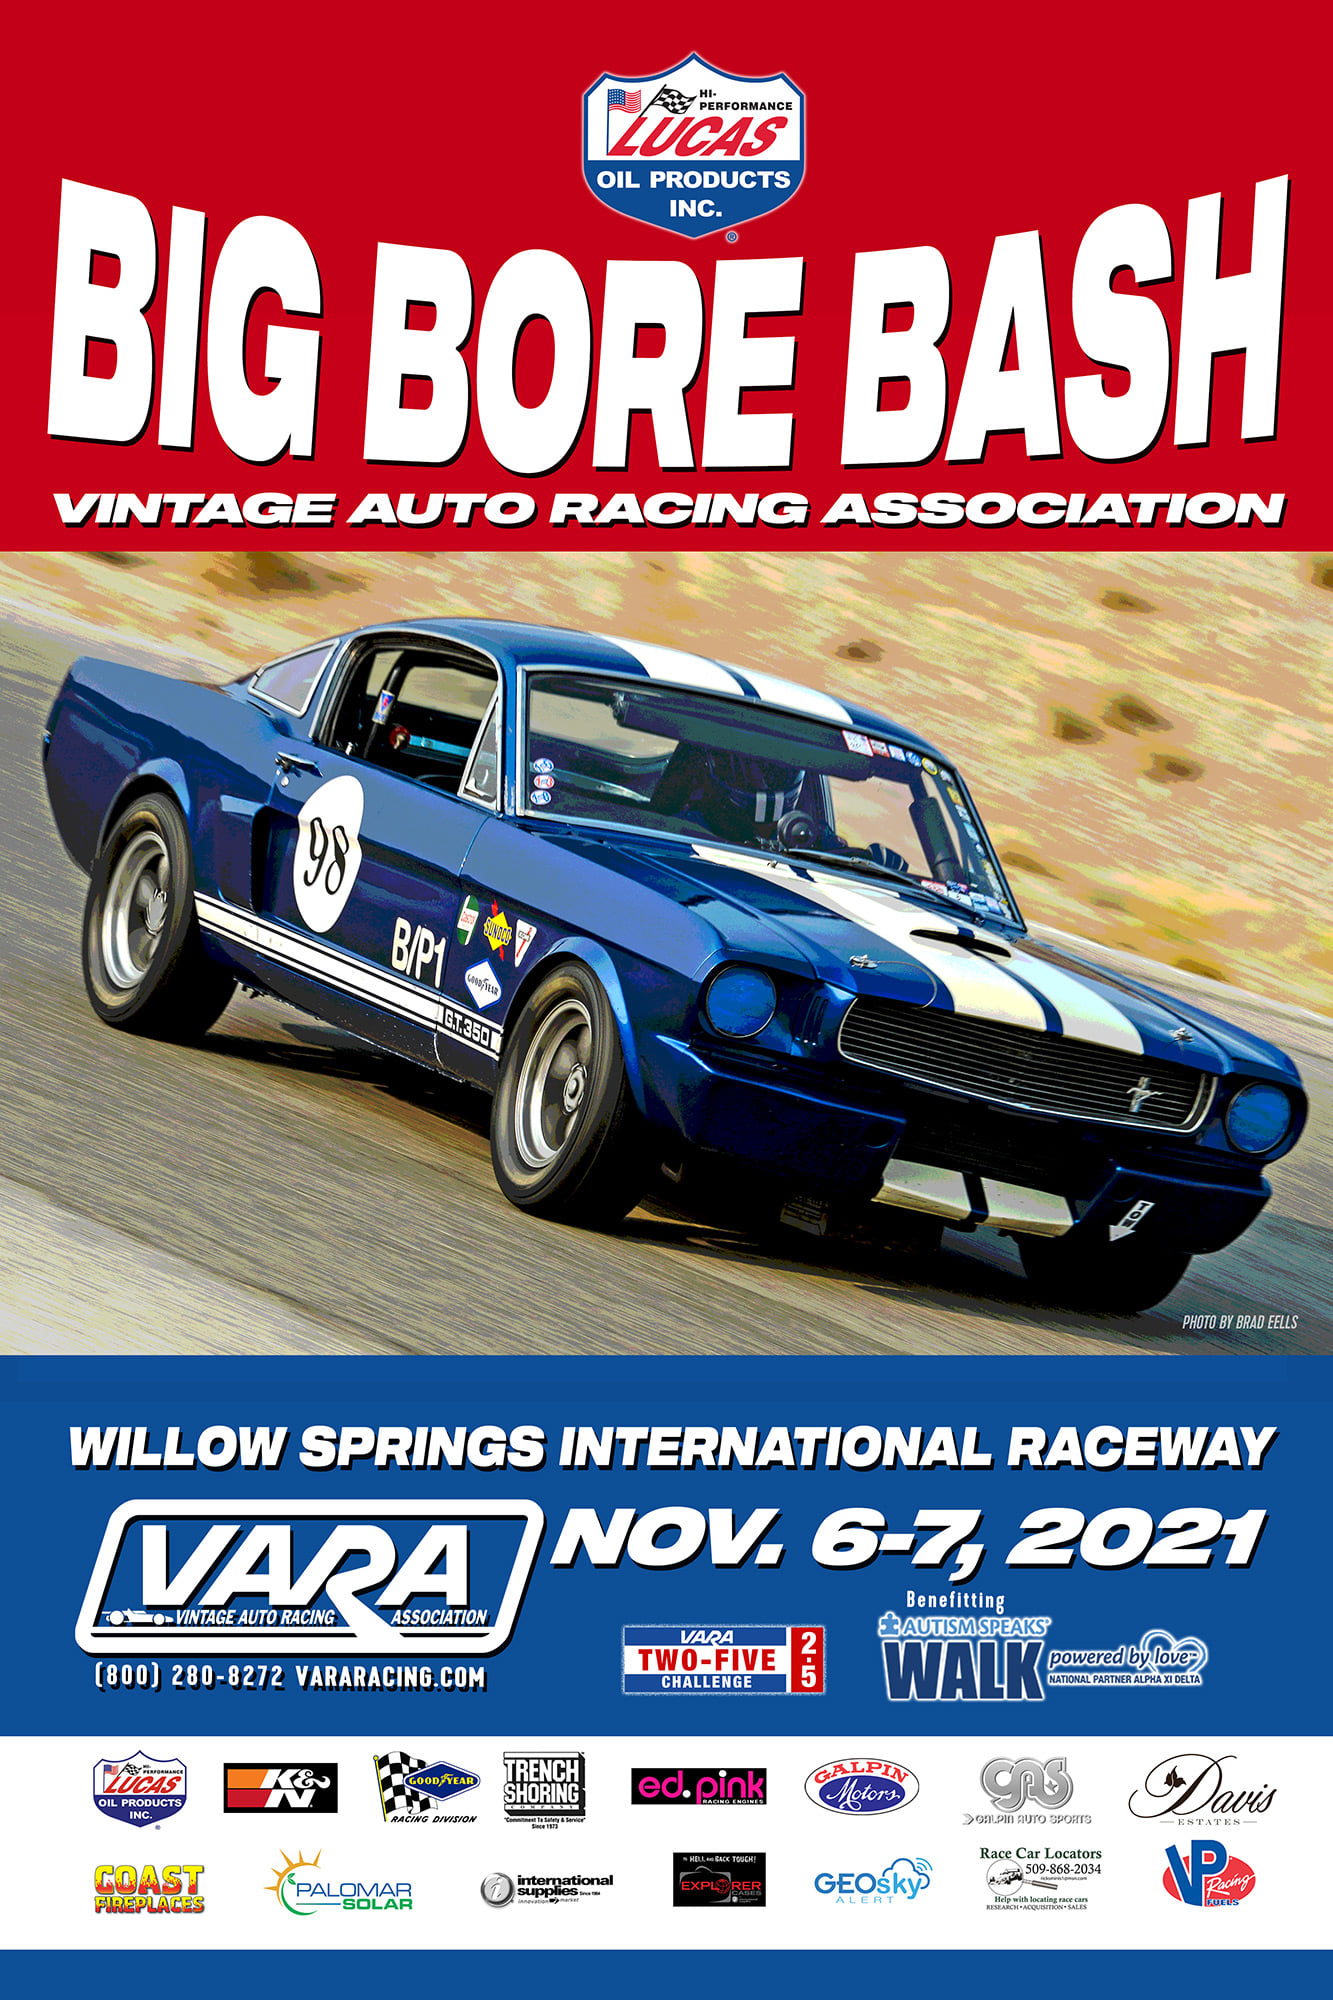 Big Bore Bash Vintage Auto Racing